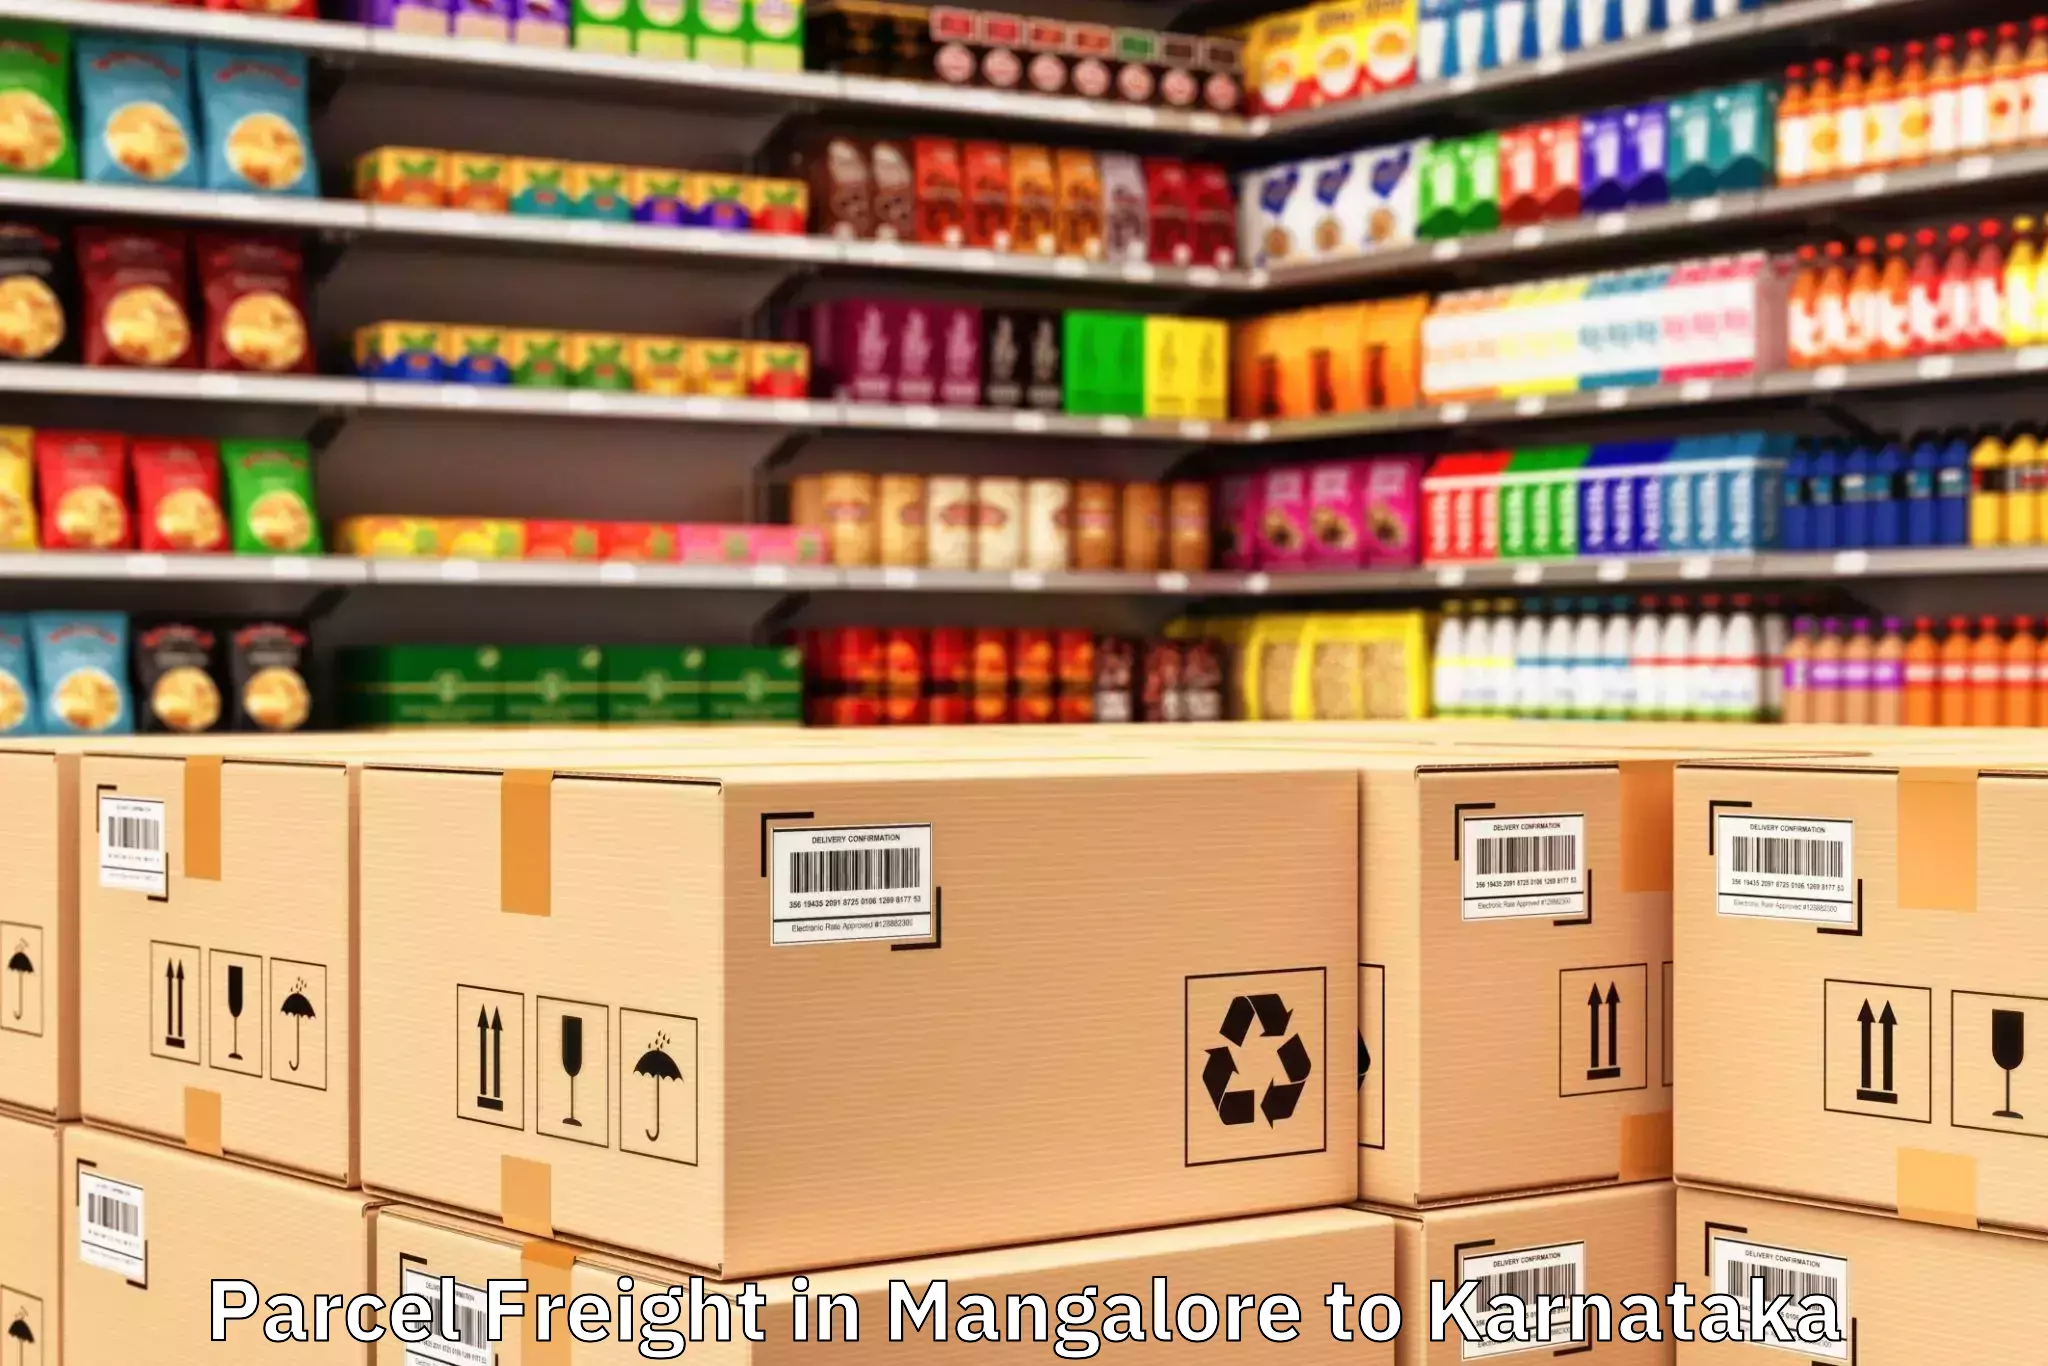 Mangalore to Karnataka Parcel Freight Booking